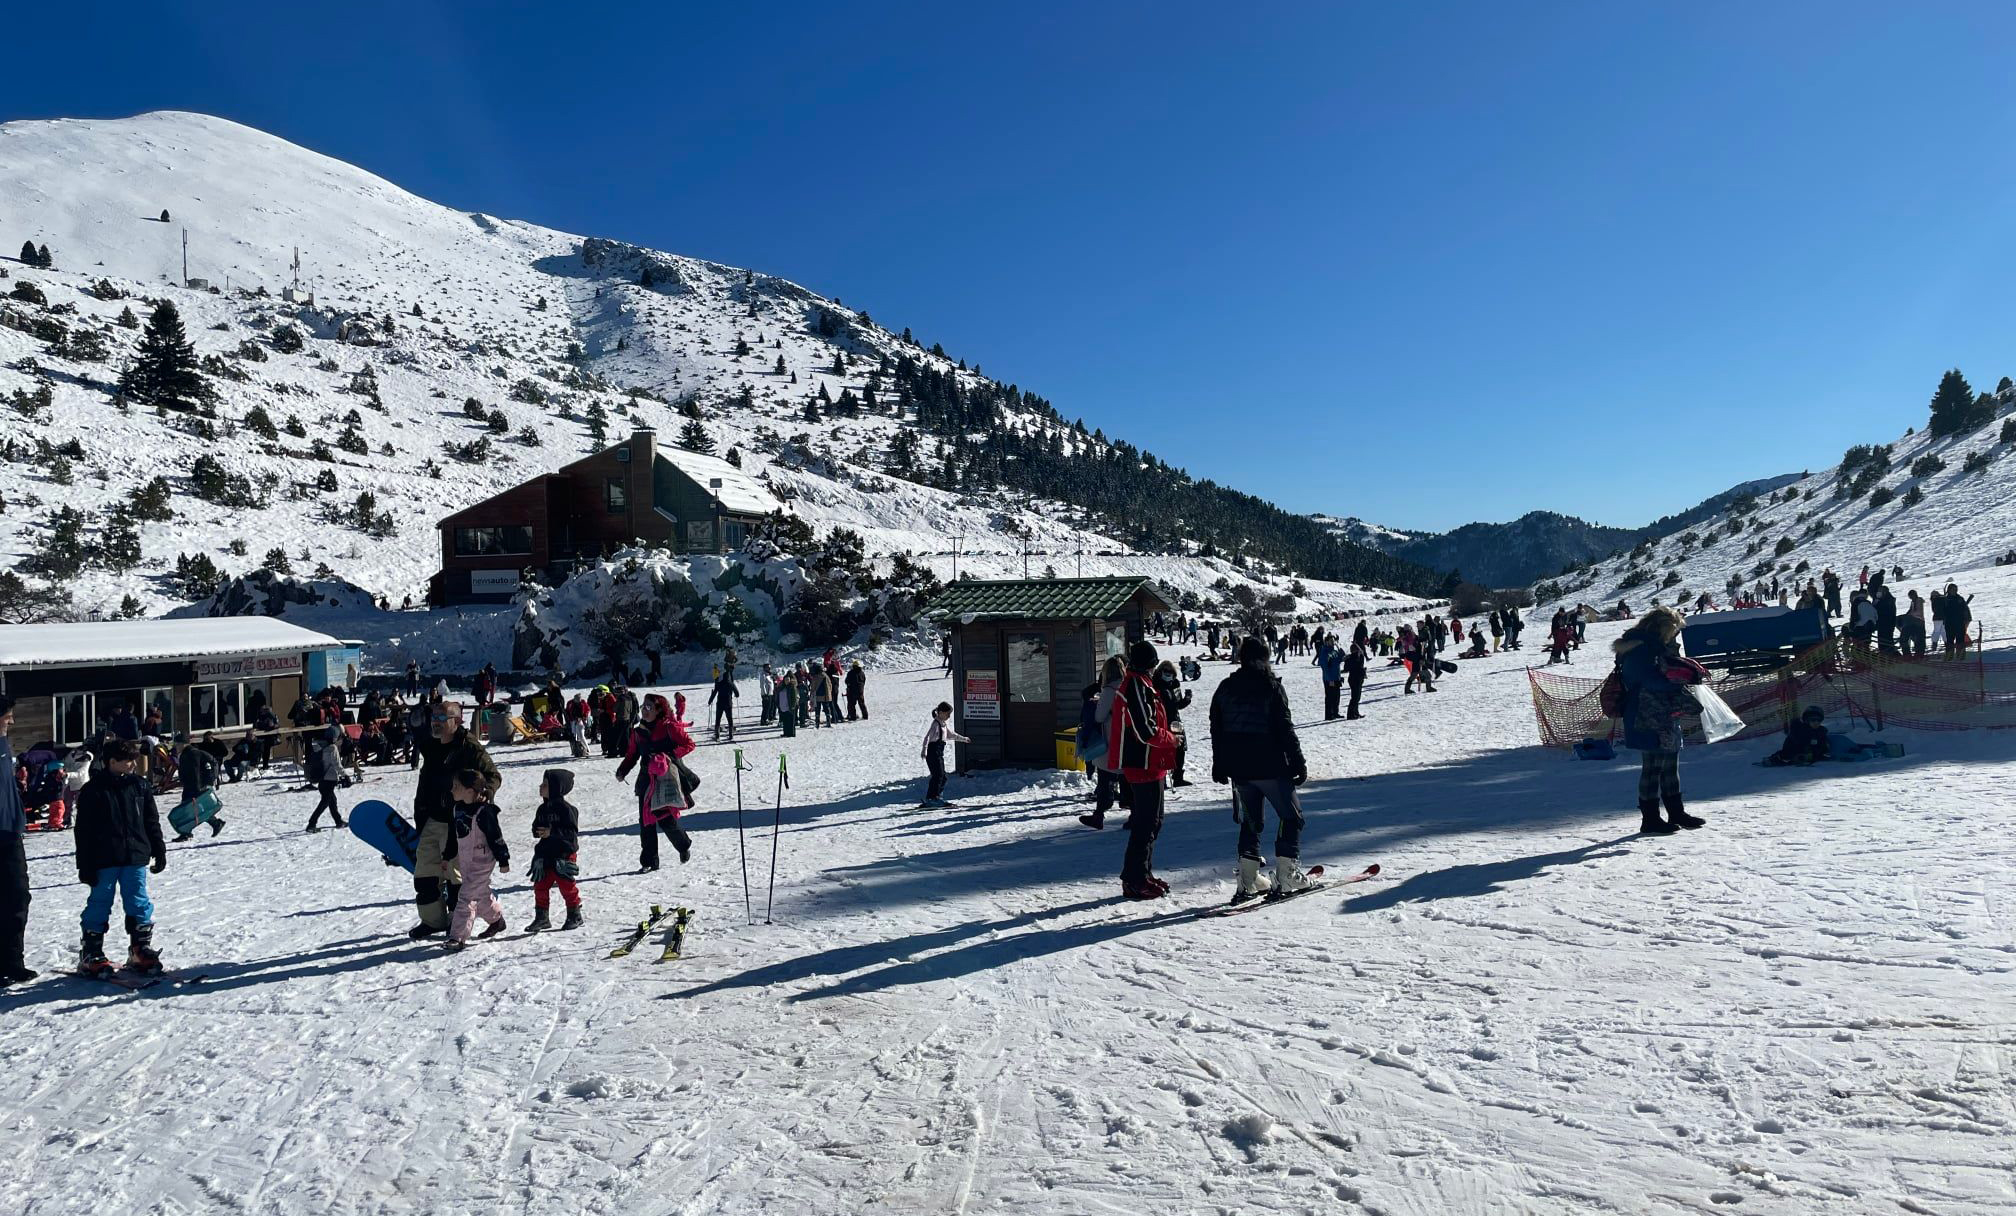 Ηλιόλουστη μέρα με πολύ κόσμο στο Χιονοδρομικό Κέντρο Μαινάλου